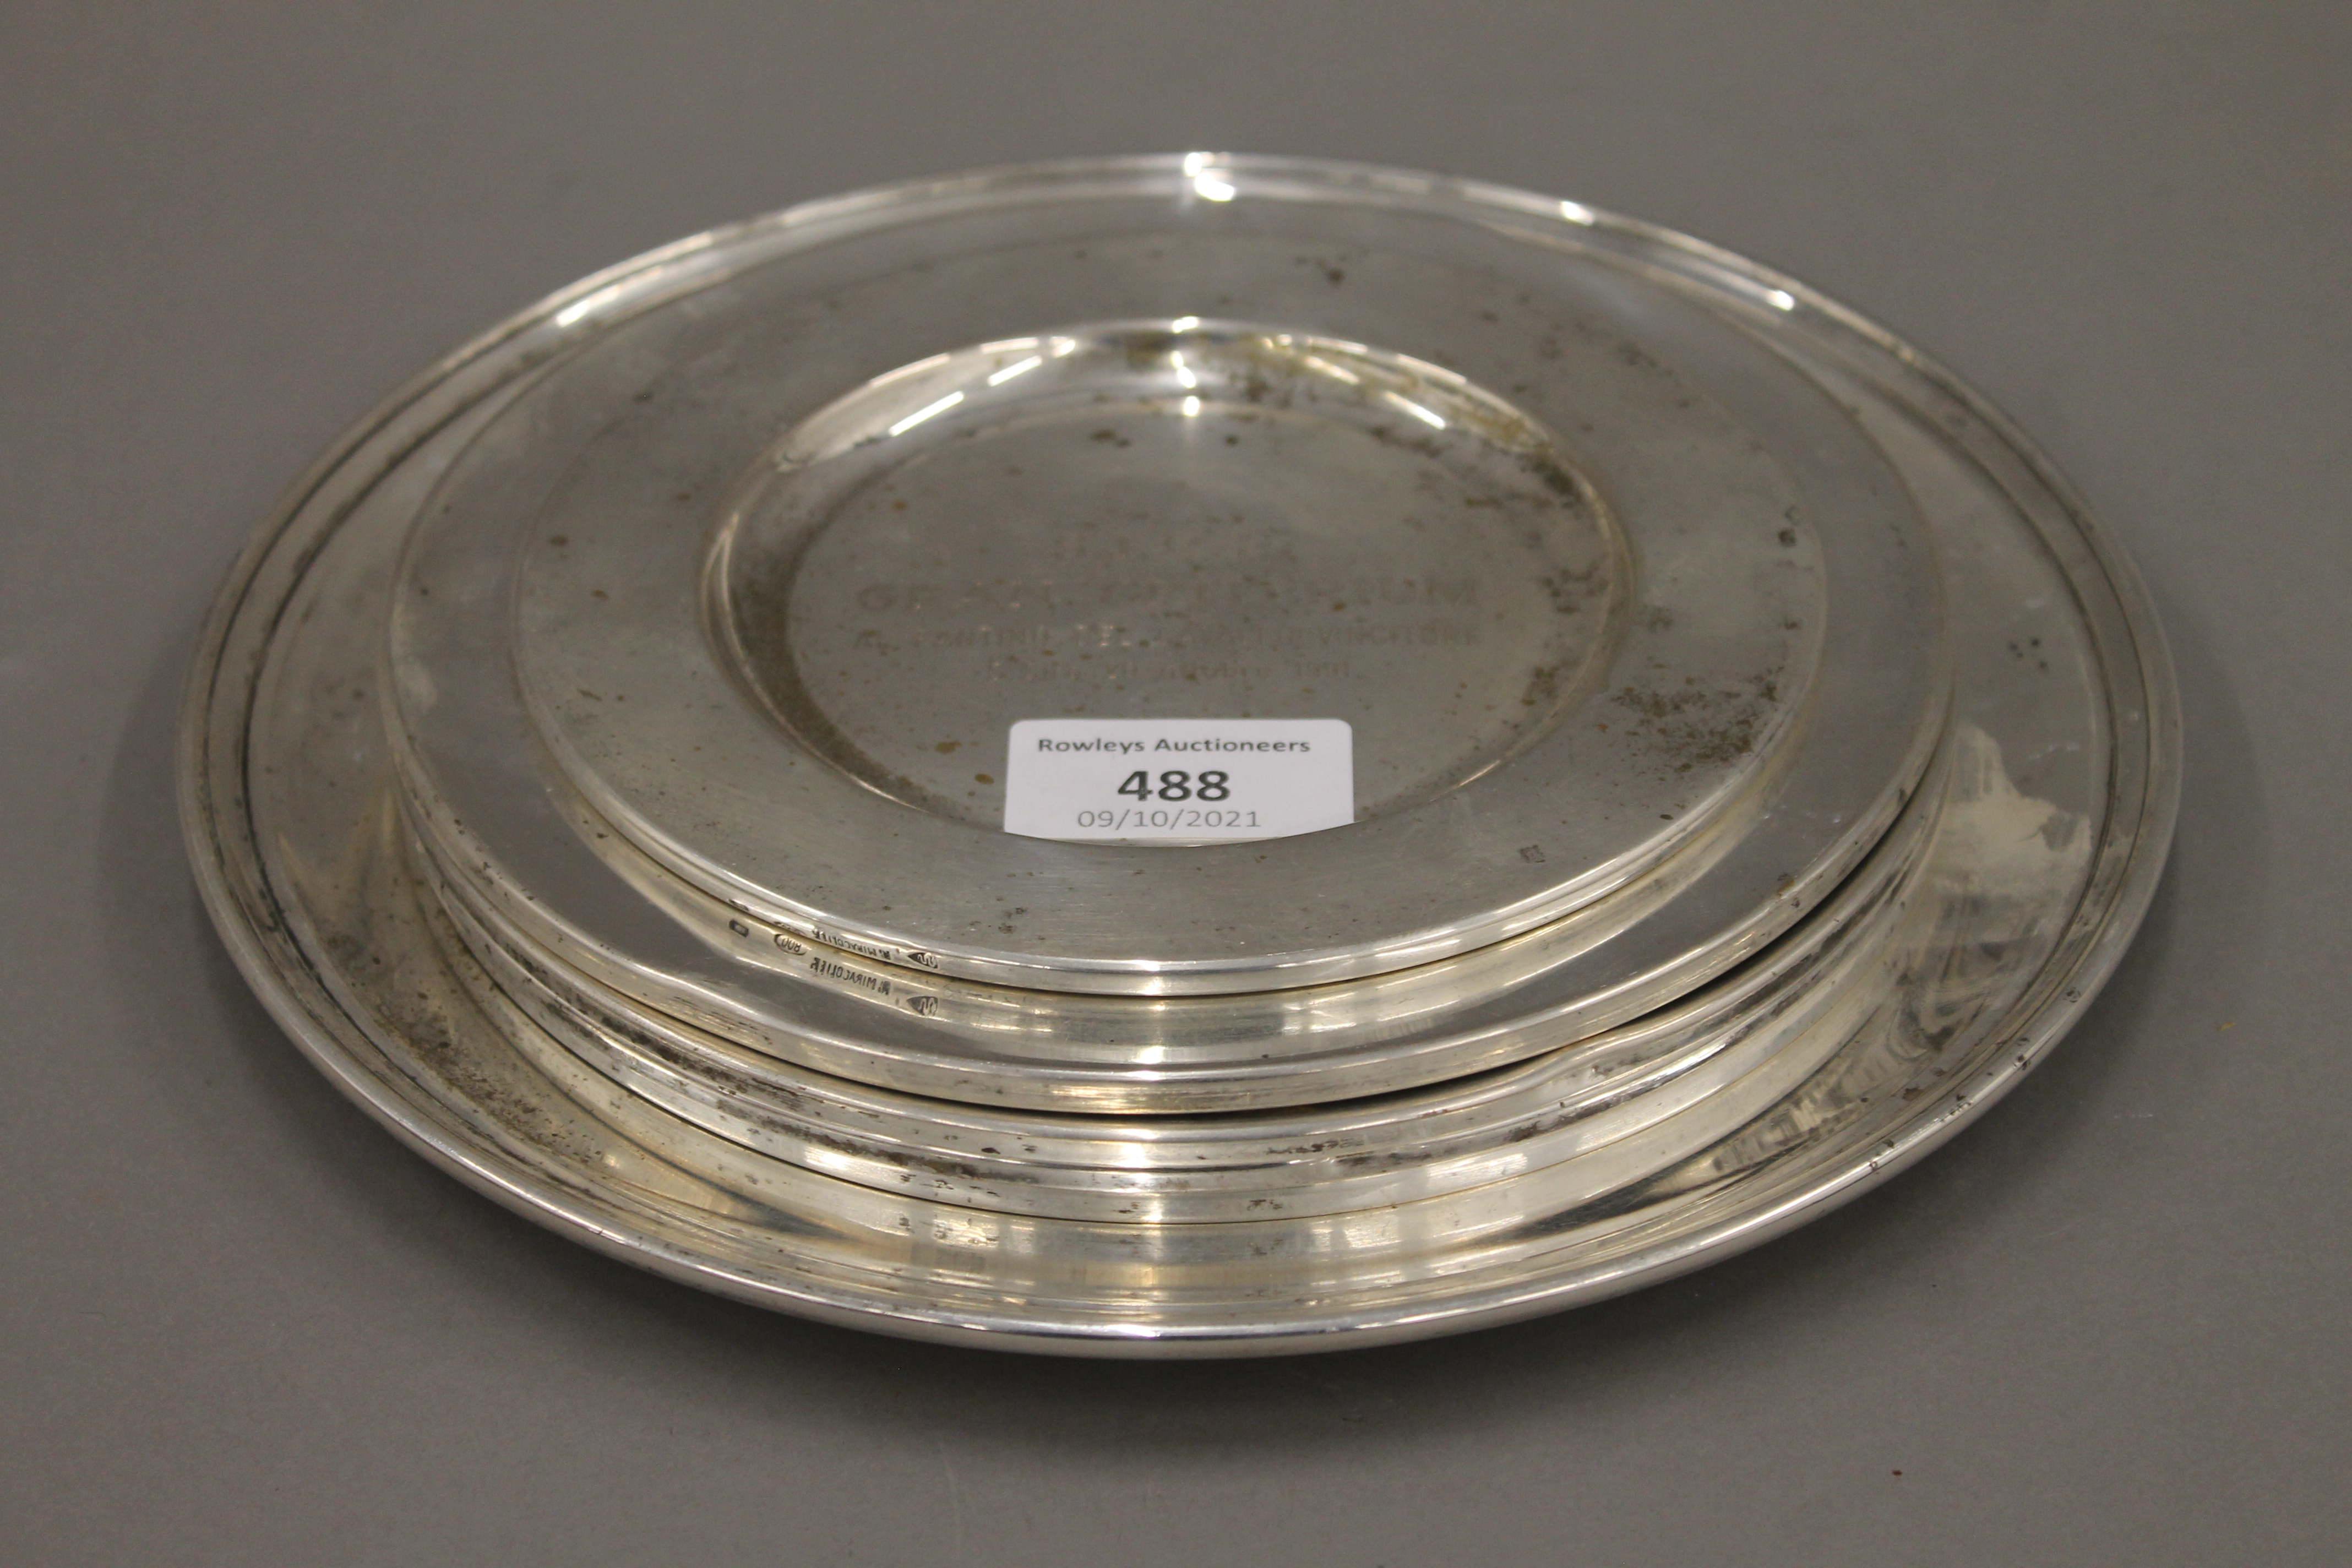 Six Lester Piggott Horse Racing trophy plates. The largest 23 cm diameter.